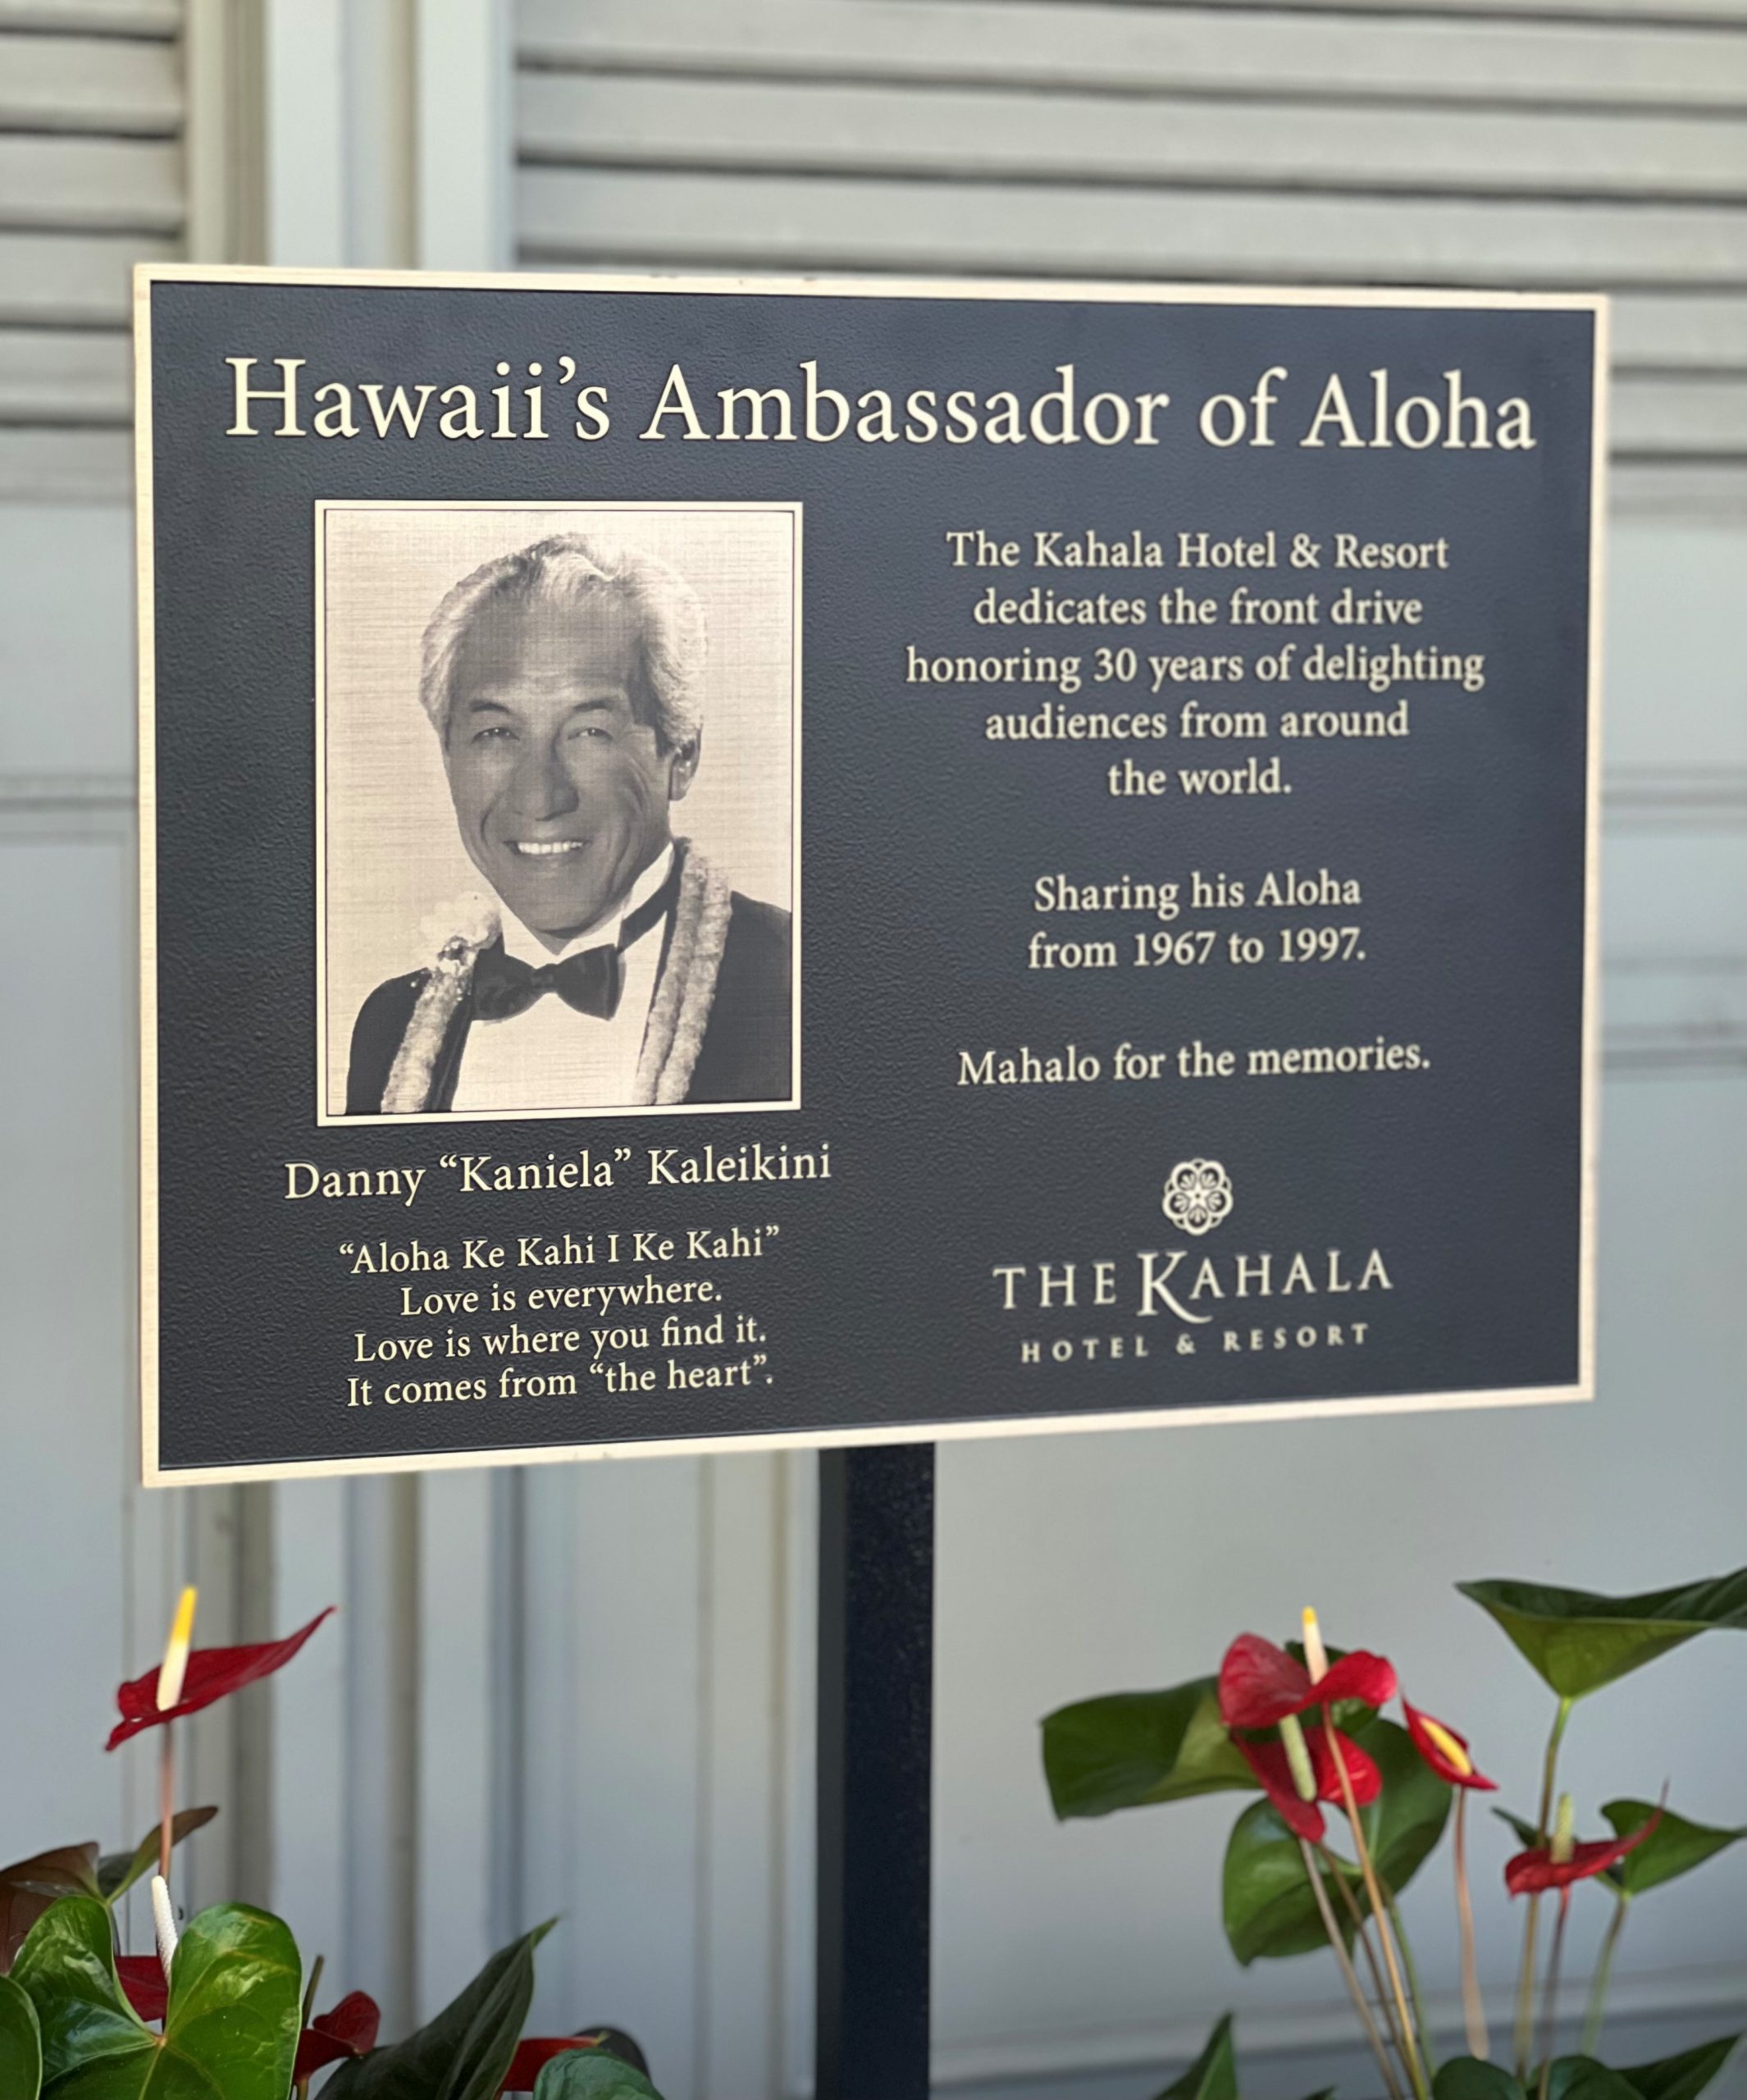 「ハワイのアロハ大使」ダニー・カレイキニ氏の栄誉をたたえる式典を開催